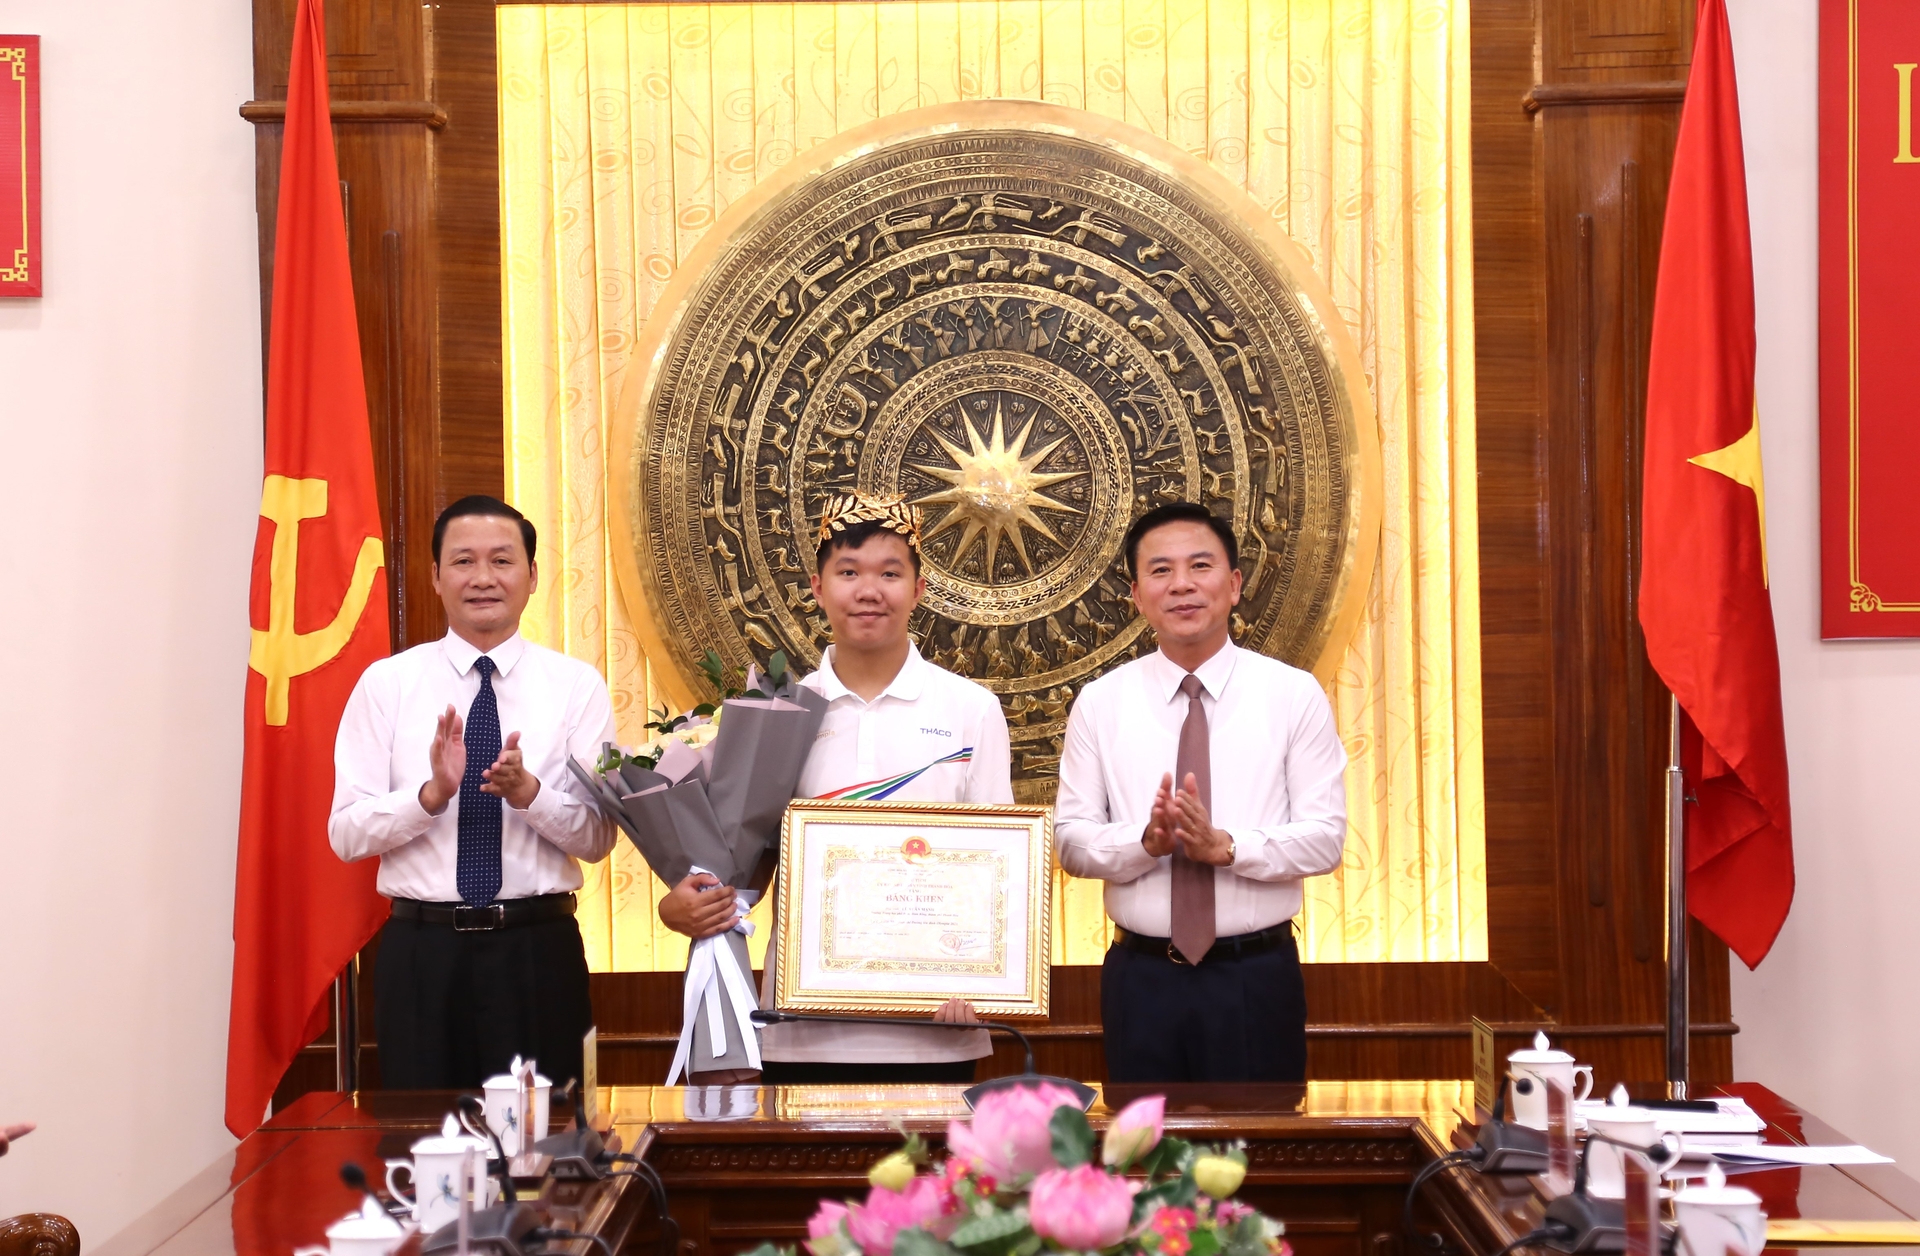 Các đồng chí Bí thư Tỉnh ủy và Chủ tịch UBND tỉnh Thanh Hóa tặng bằng khen cho em Lê Xuân Mạnh.